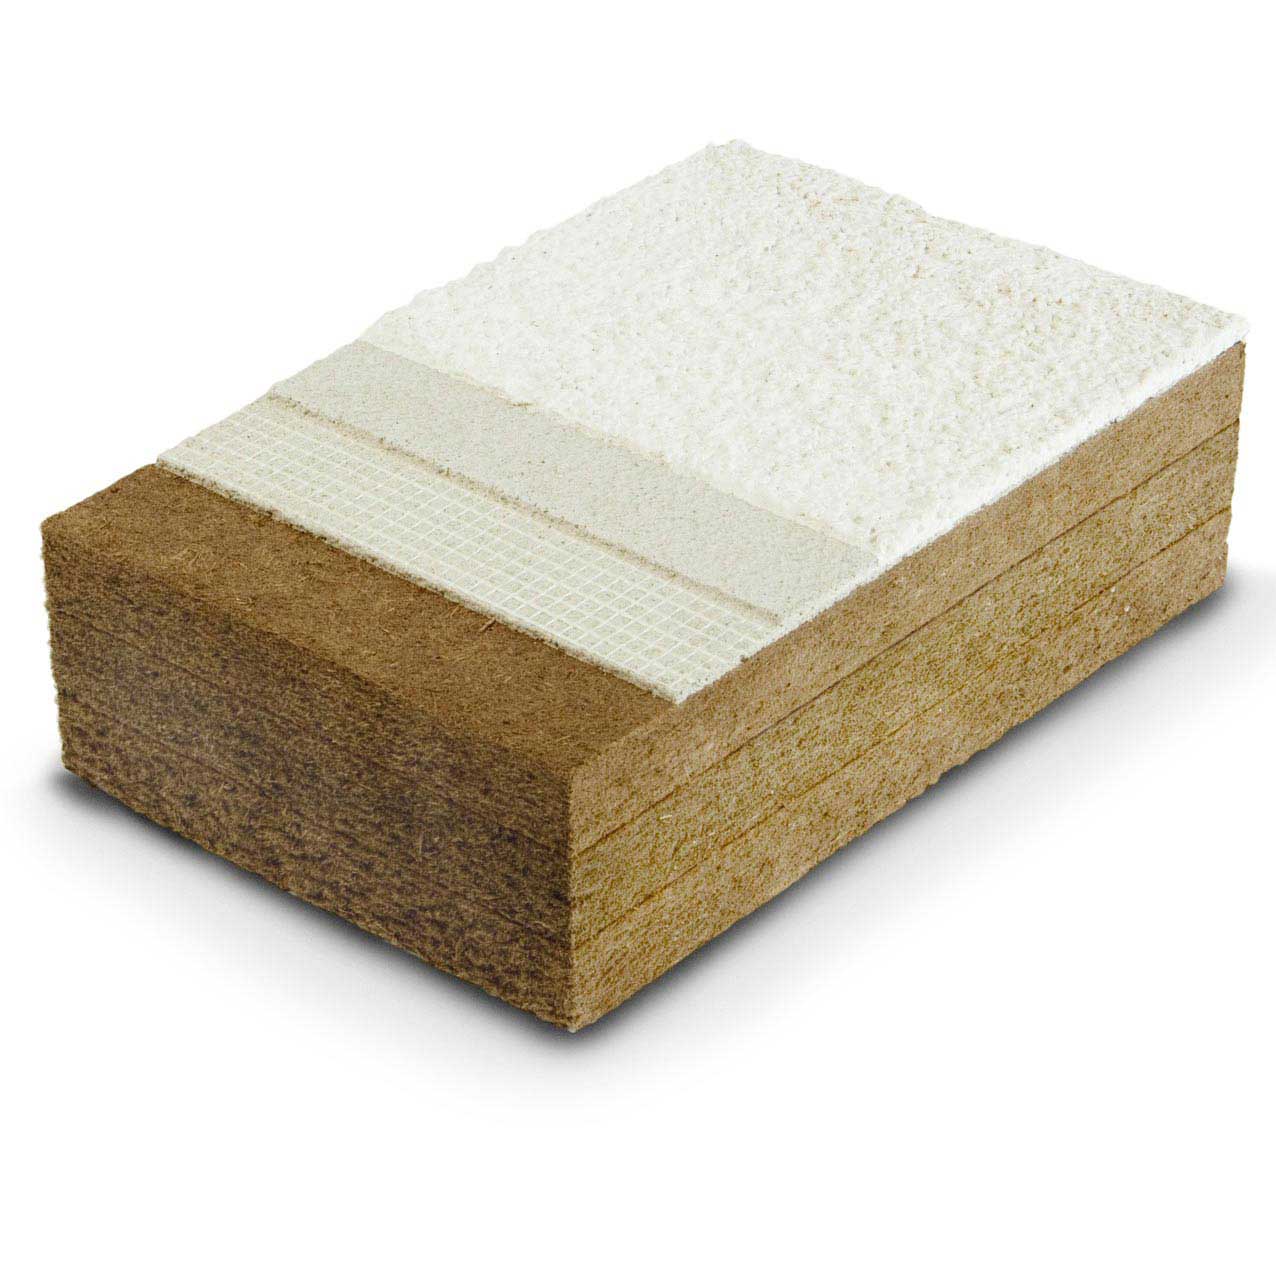 Wood fibre board FiberTherm Protect densities 230, 265kg/mc